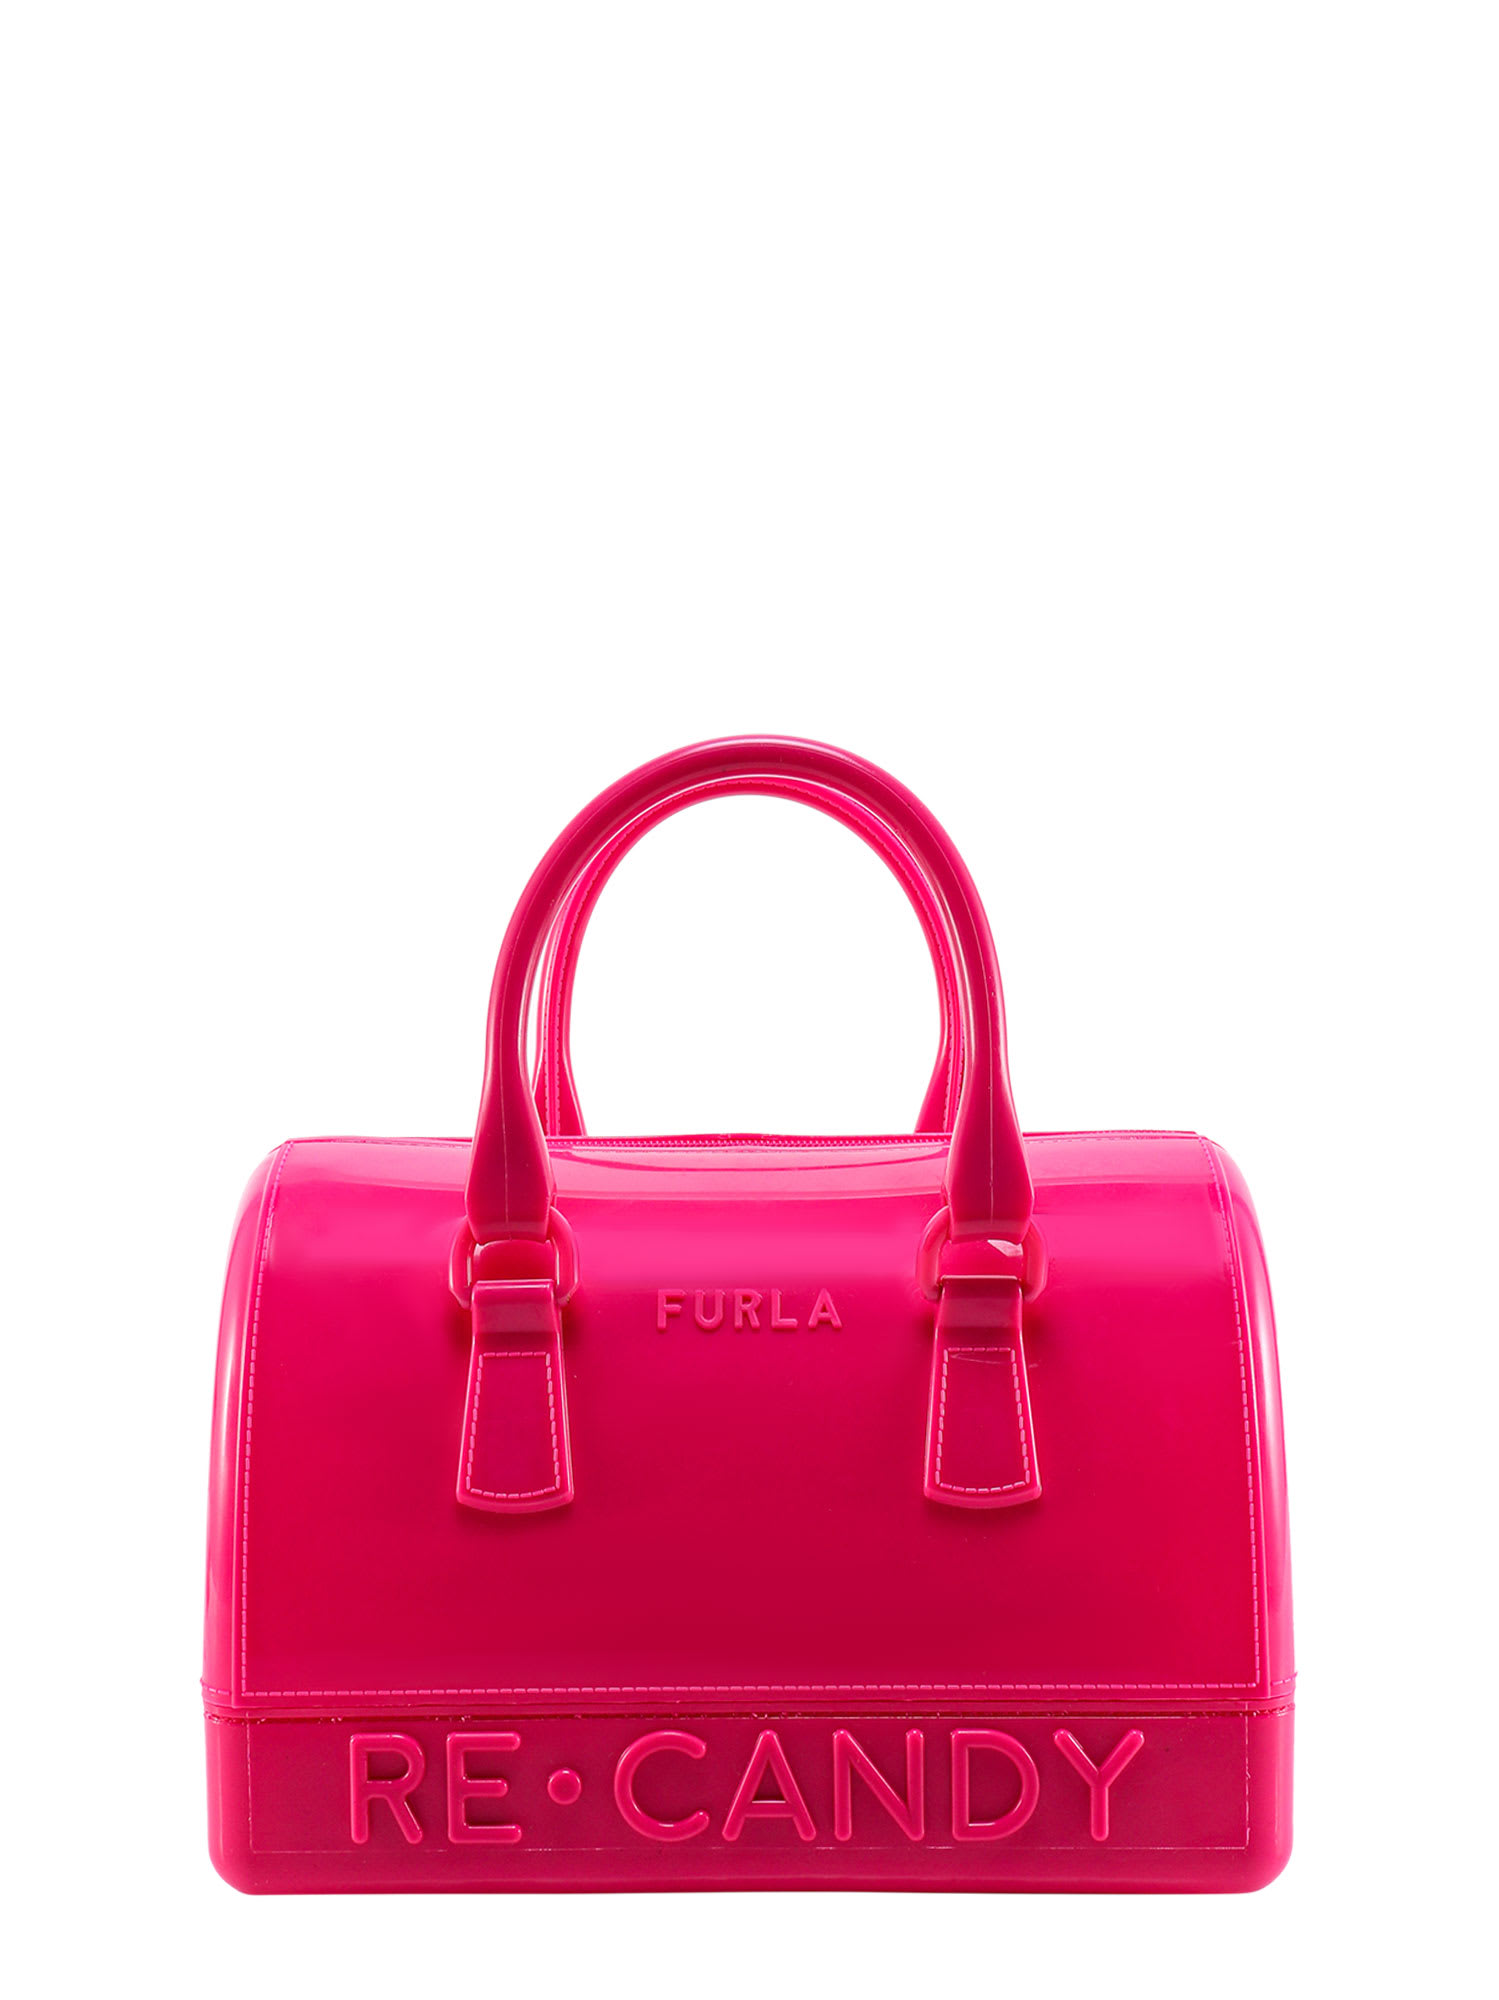 Furla Candy Handbag